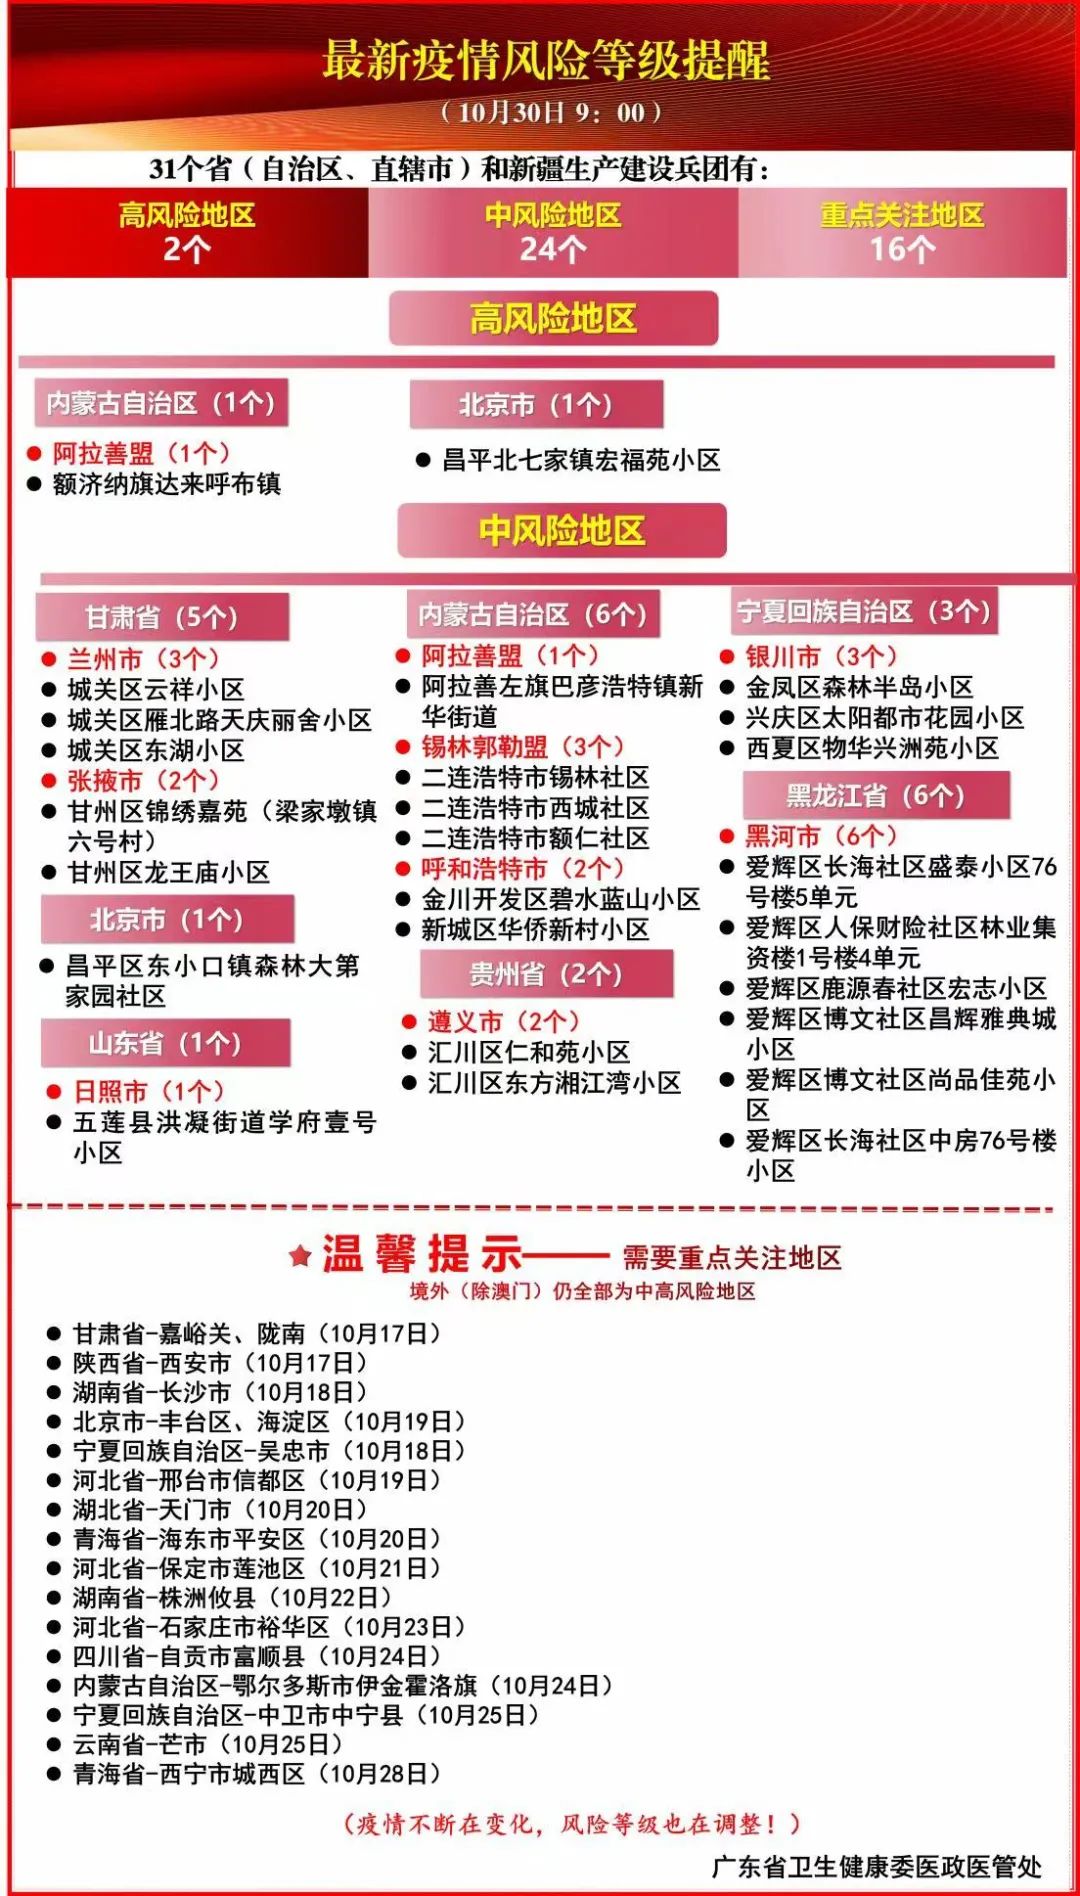 2021年10月30日广东省新冠肺炎疫情情况及最新疫情风险提示